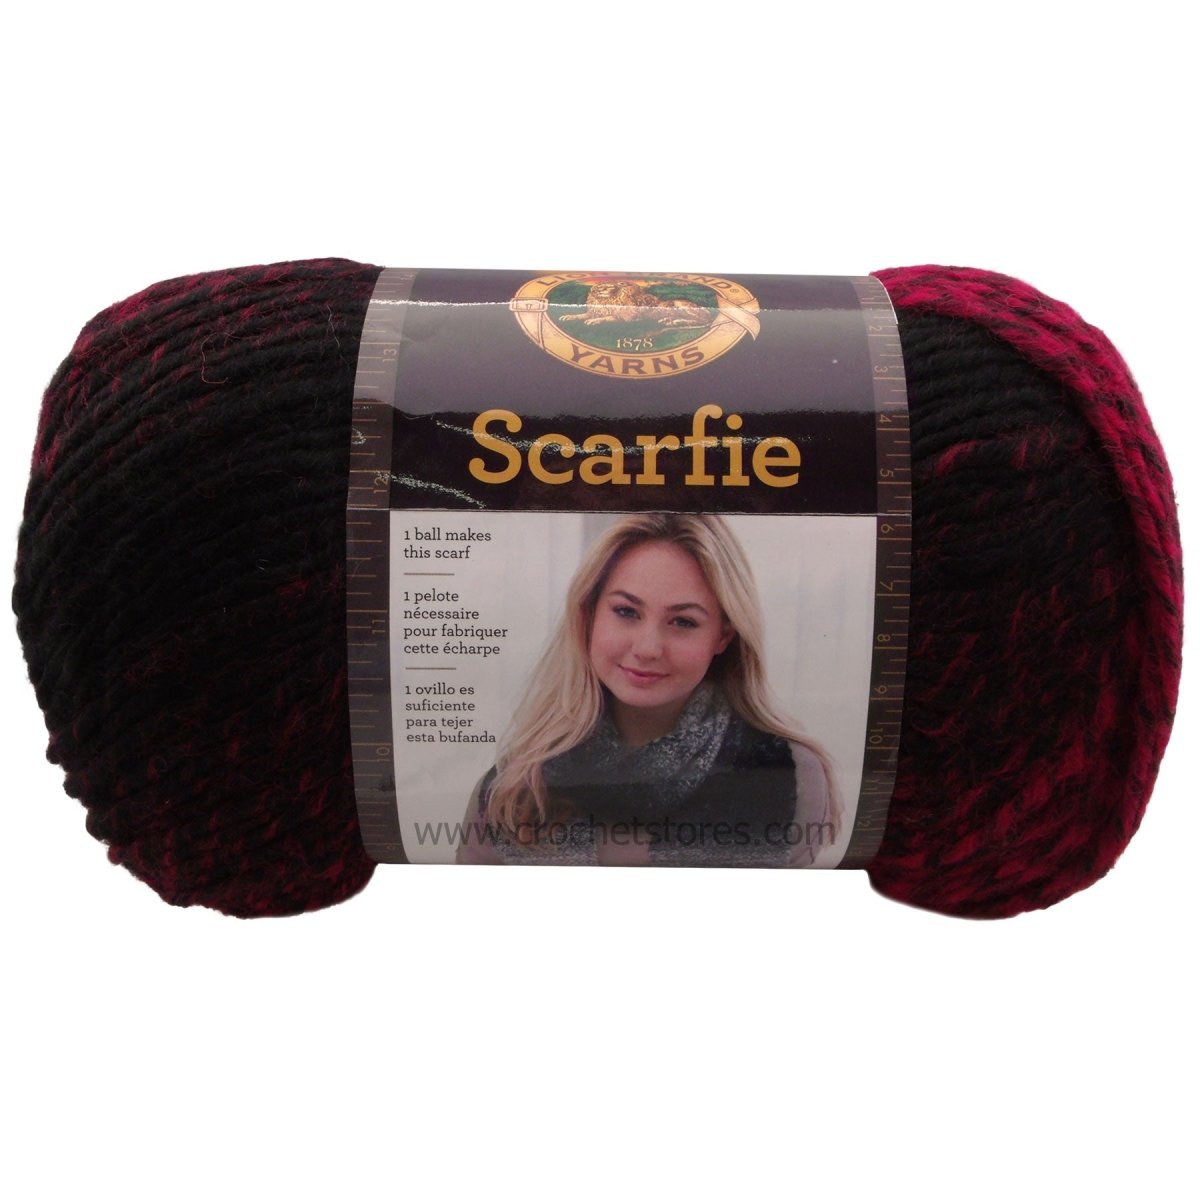 SCARFIE - Crochetstores826-205